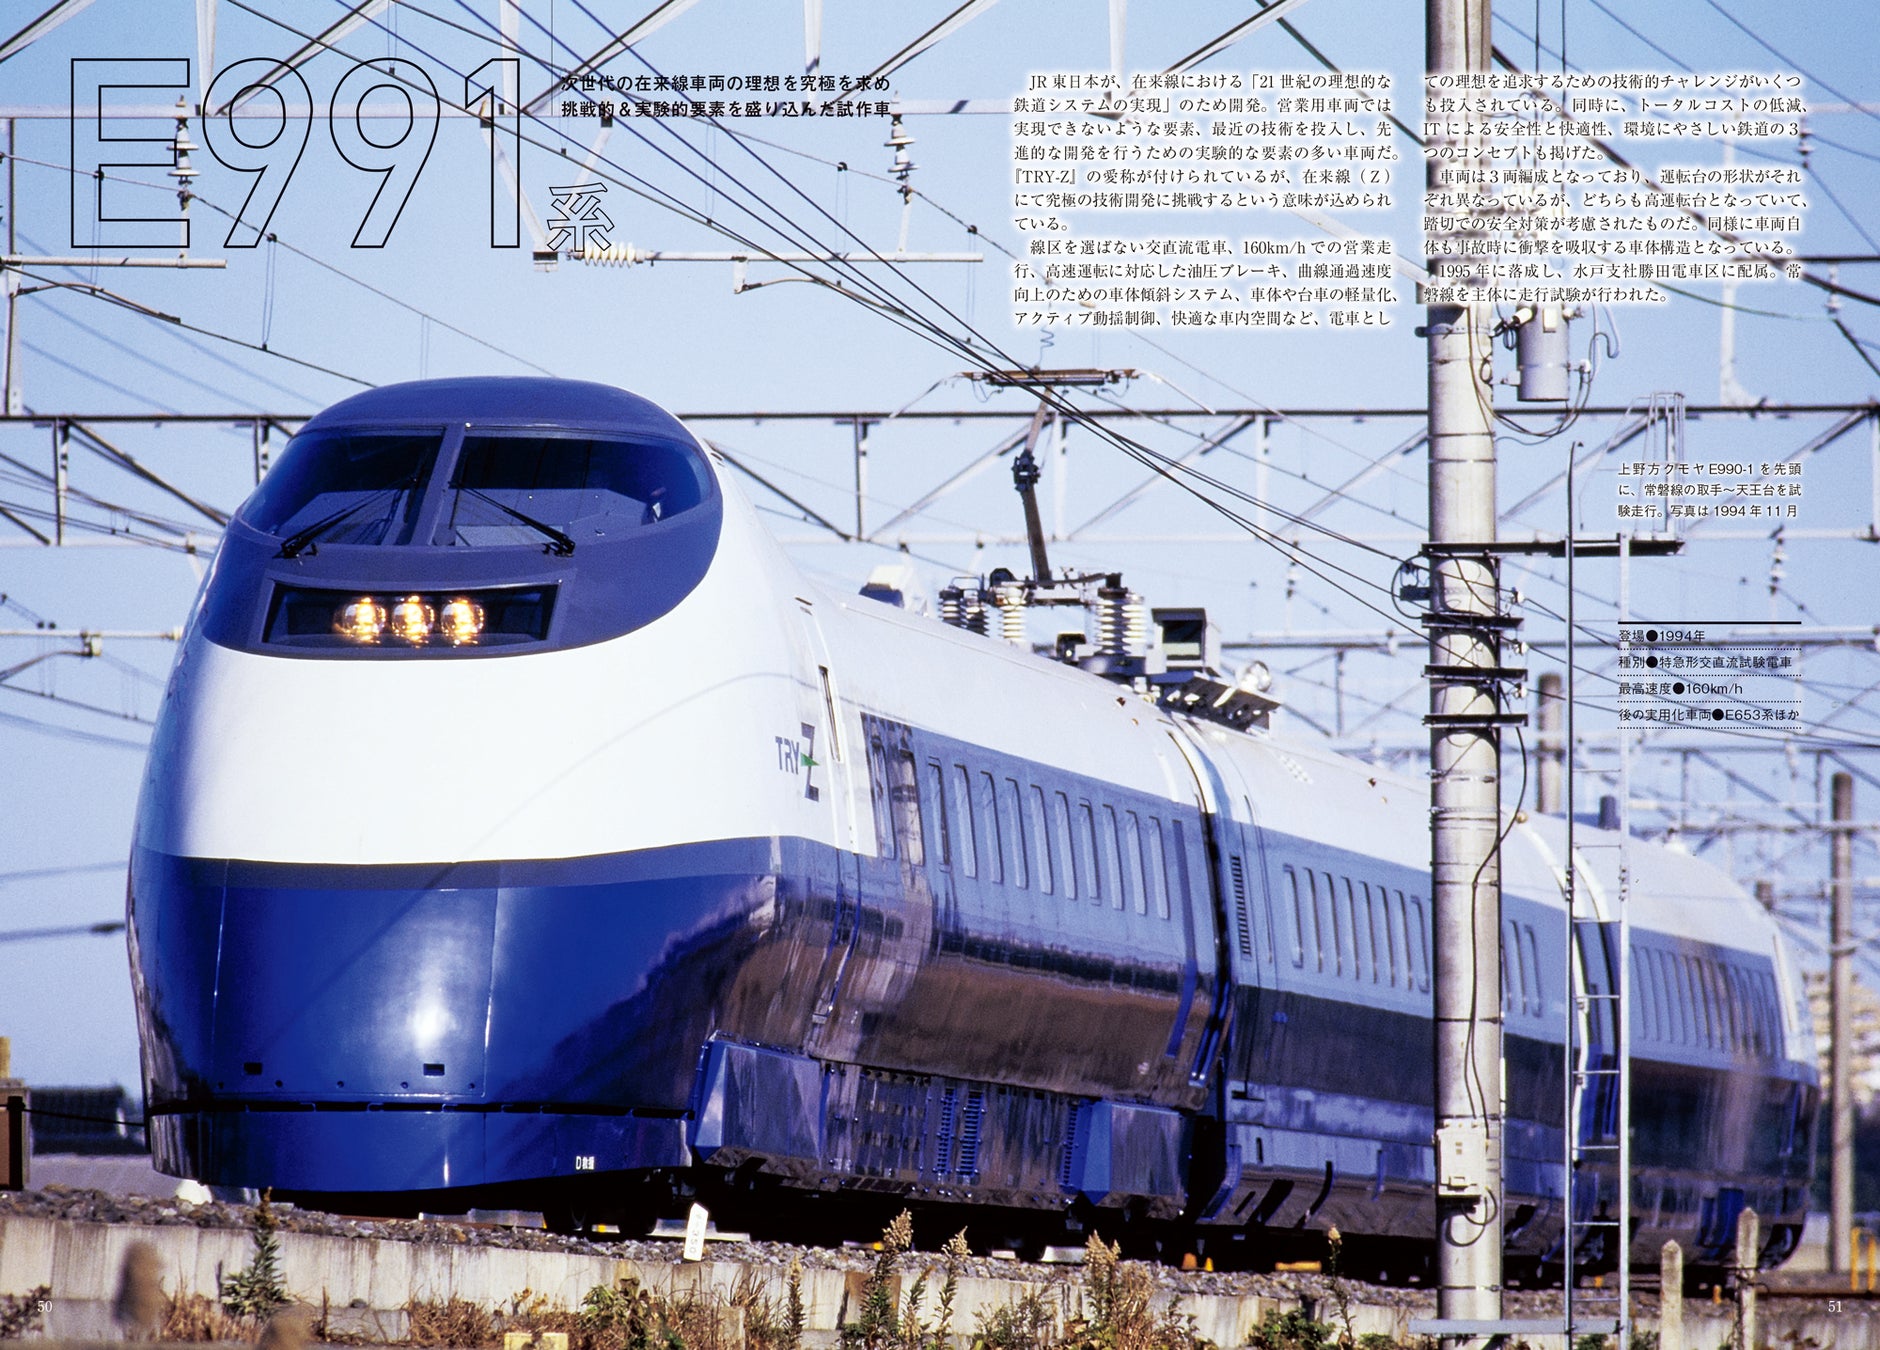 新幹線や電車の試作車両大集合!!　高速性・居住性追求からハイブリッド、水素まで網羅した『JRプロトタイプ車...